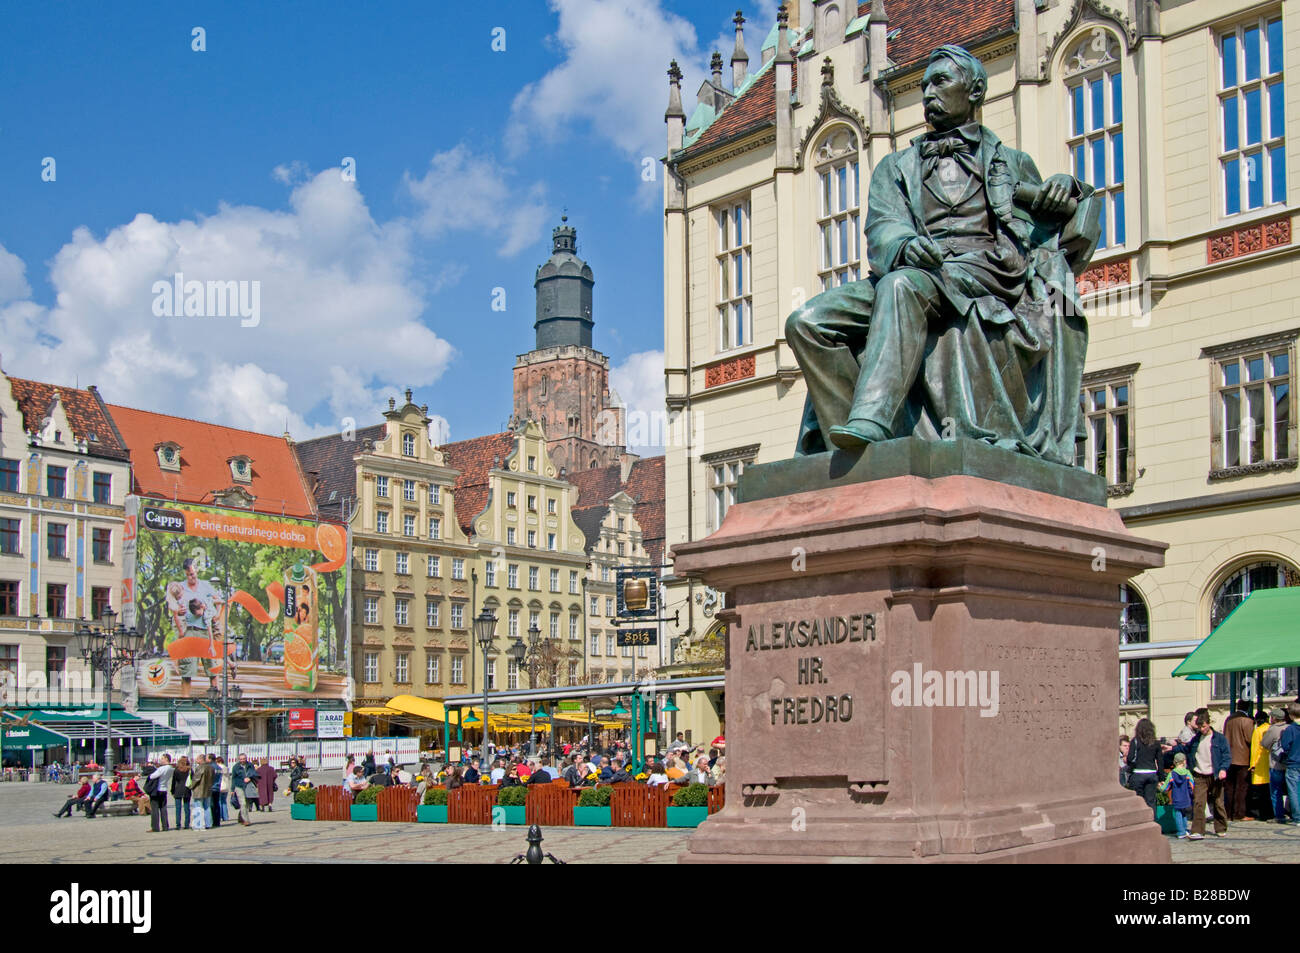 Wroclaw, Silésie, Pologne. Statue de Alexandra Fredro (comédie, dramaturge polonais 1793-1876) dans le Rynek (place du marché). Banque D'Images